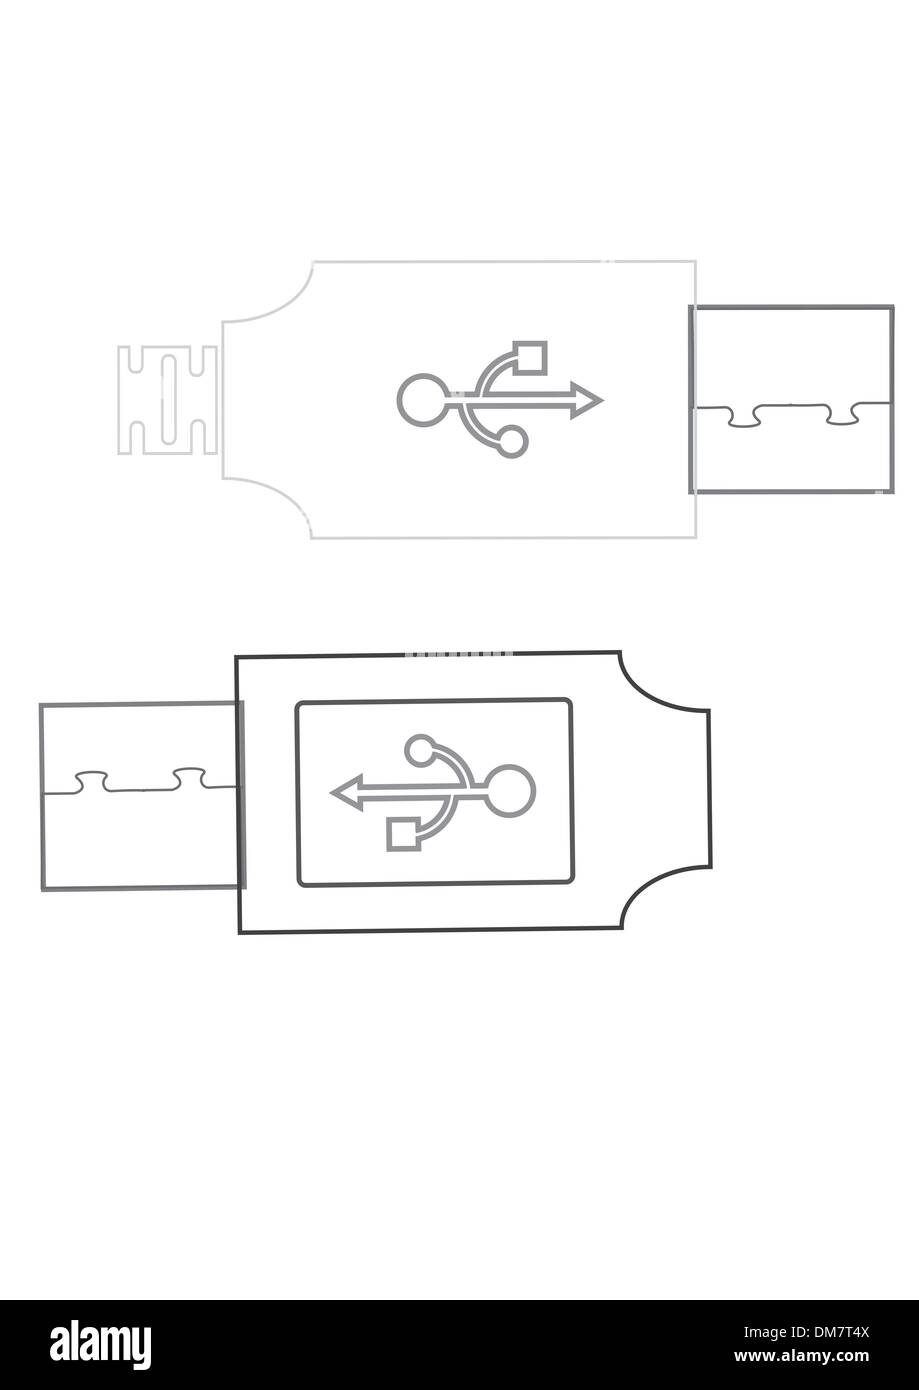 Câble USB. Vector illustration. Illustration de Vecteur